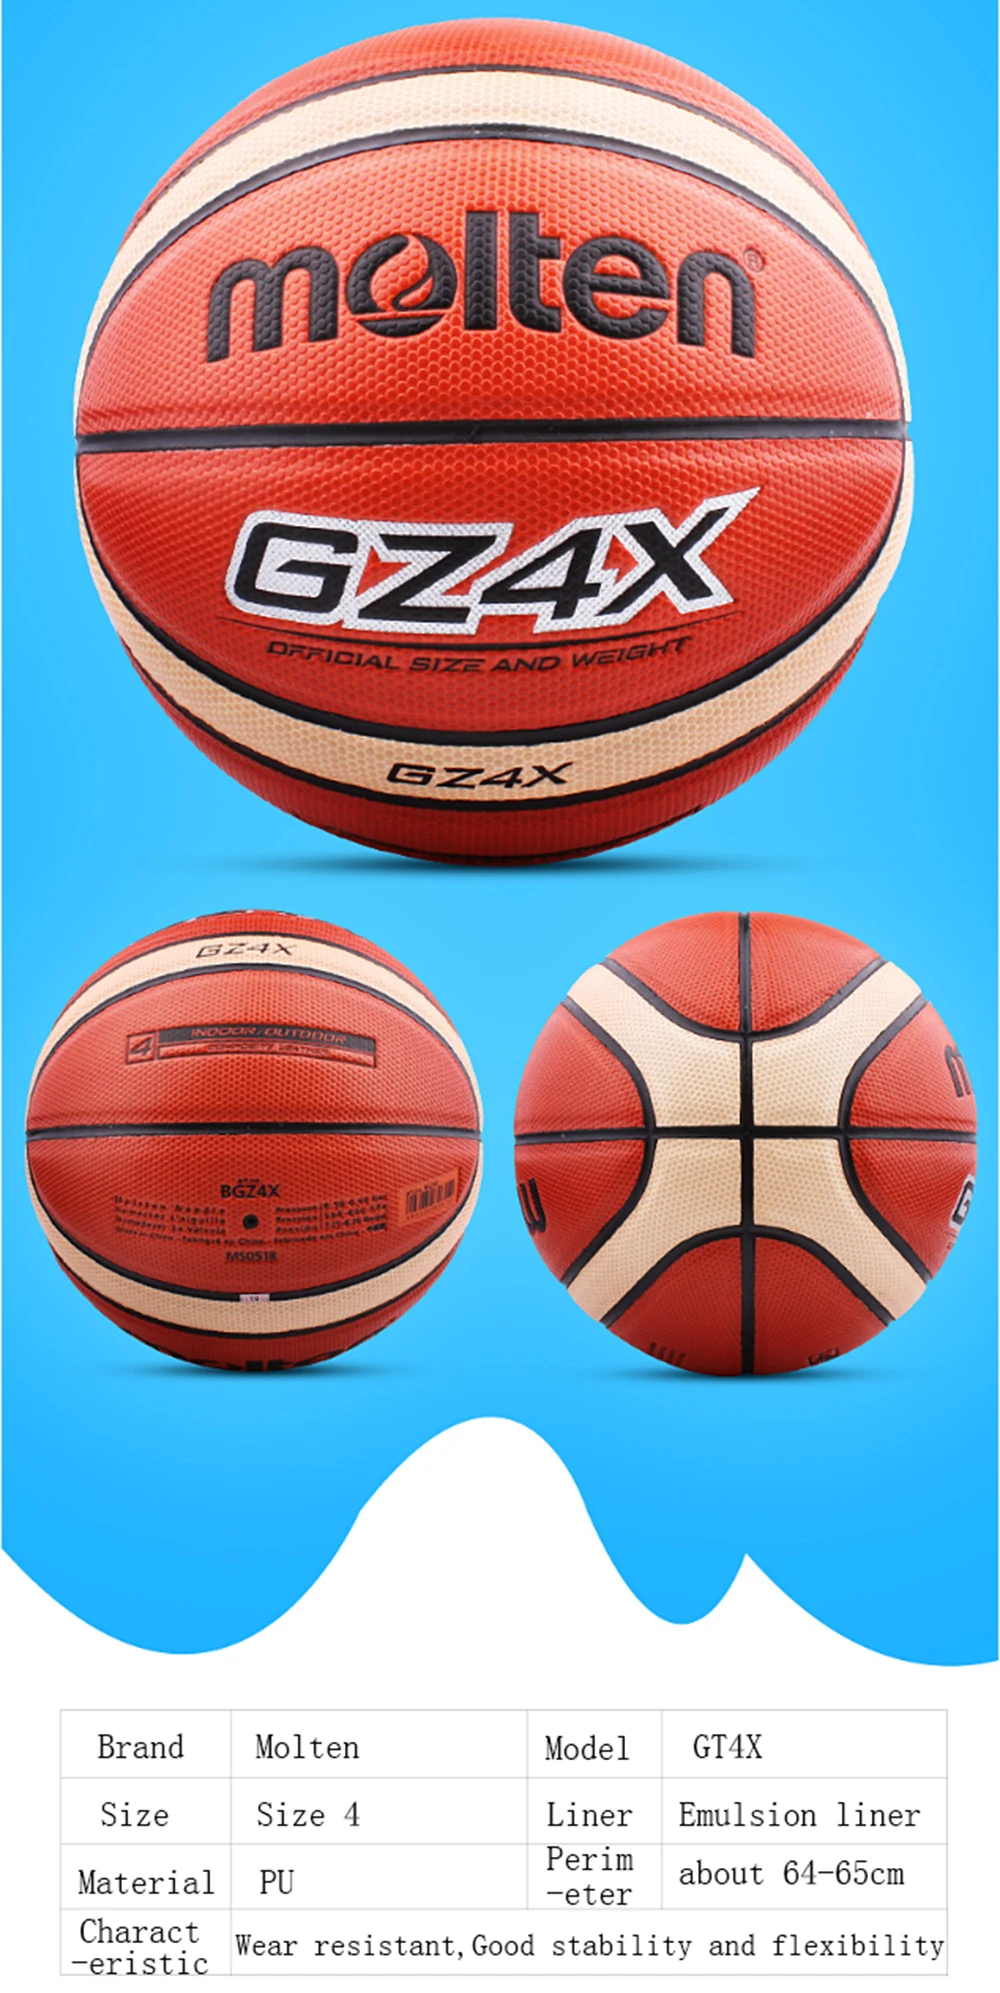 Оригинальный Molten Баскетбол мяч Gt4x/Gz4x высокое качество натуральной расплавленный PU Материал Размер 4 подходит для маленьких детей